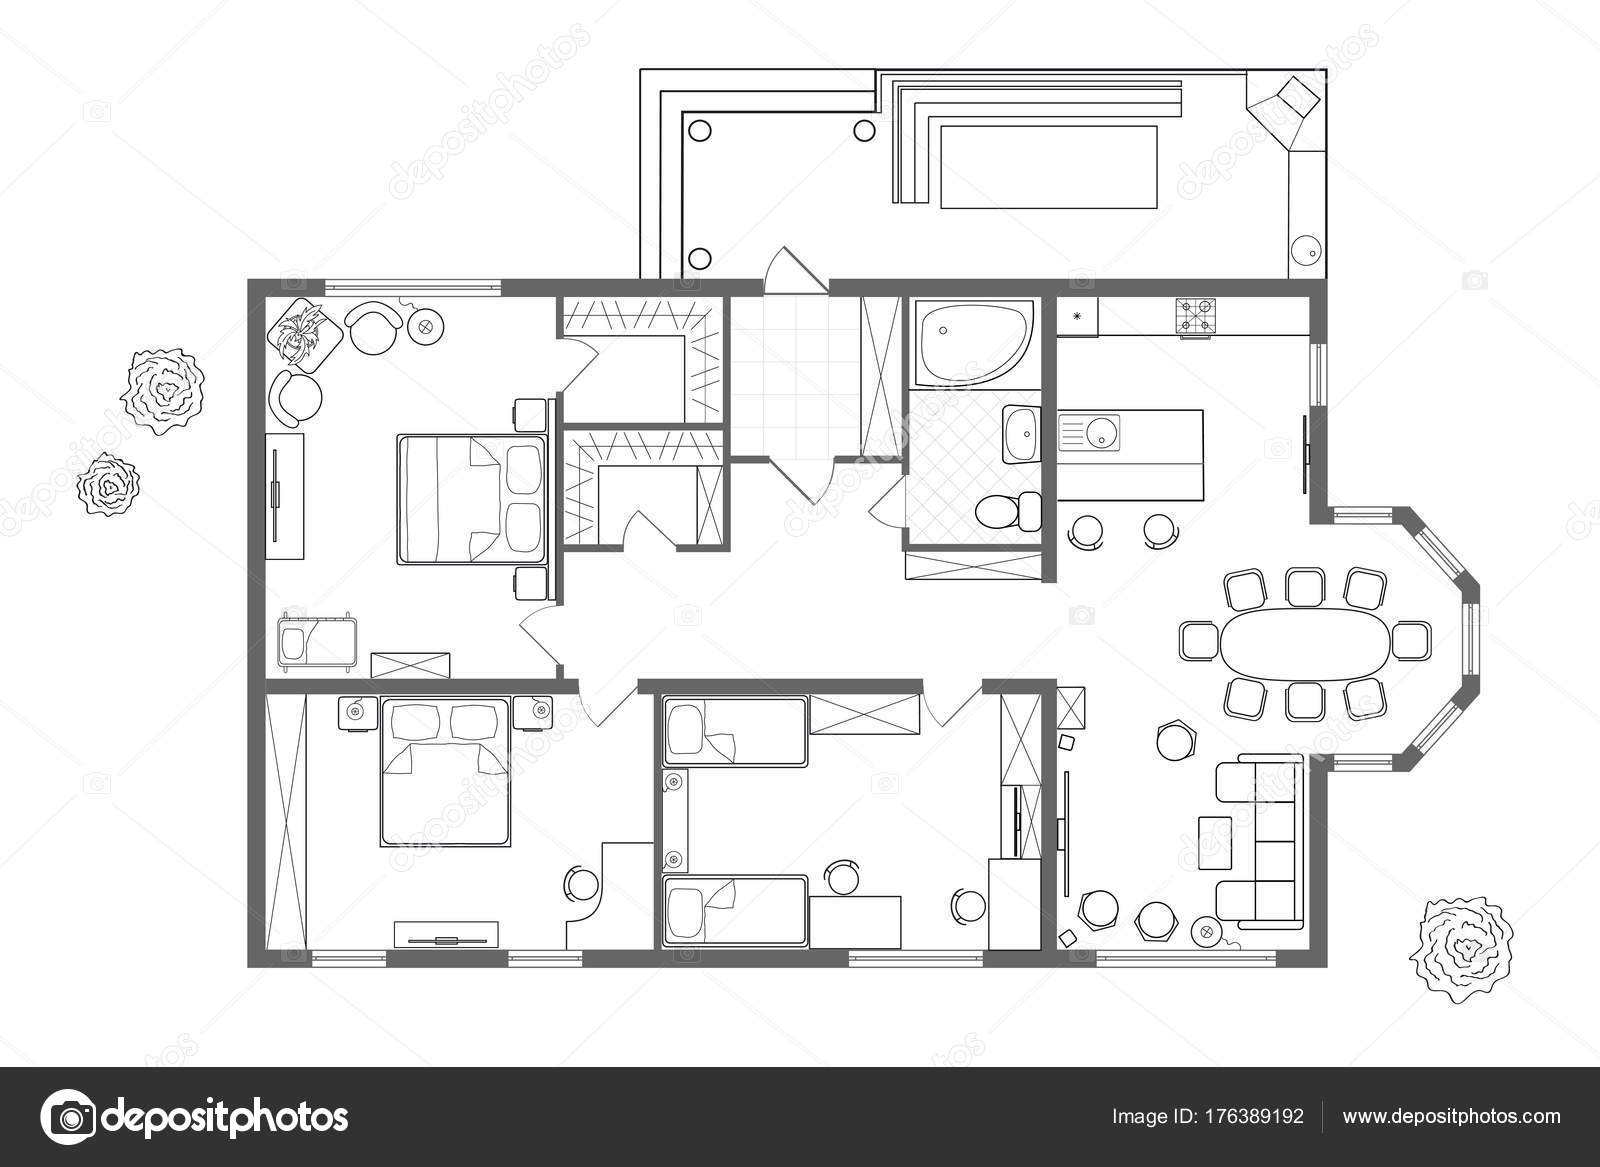 Dibujo profesional detallado de un diseño plano de casa estilo